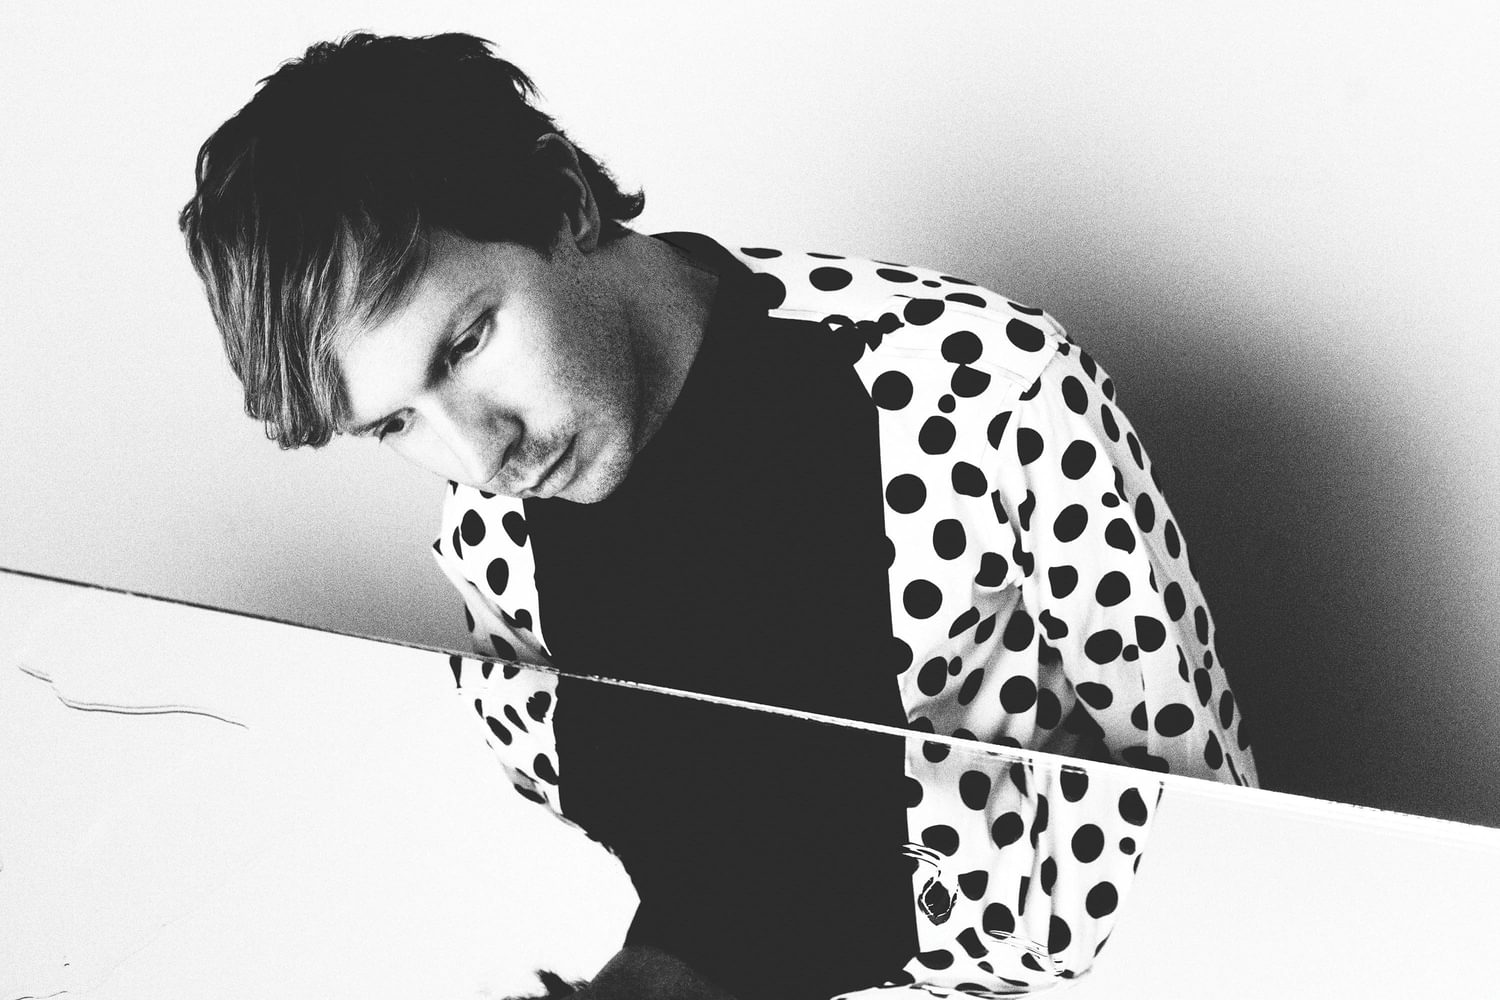 Beck airs new track ‘Tarantula’